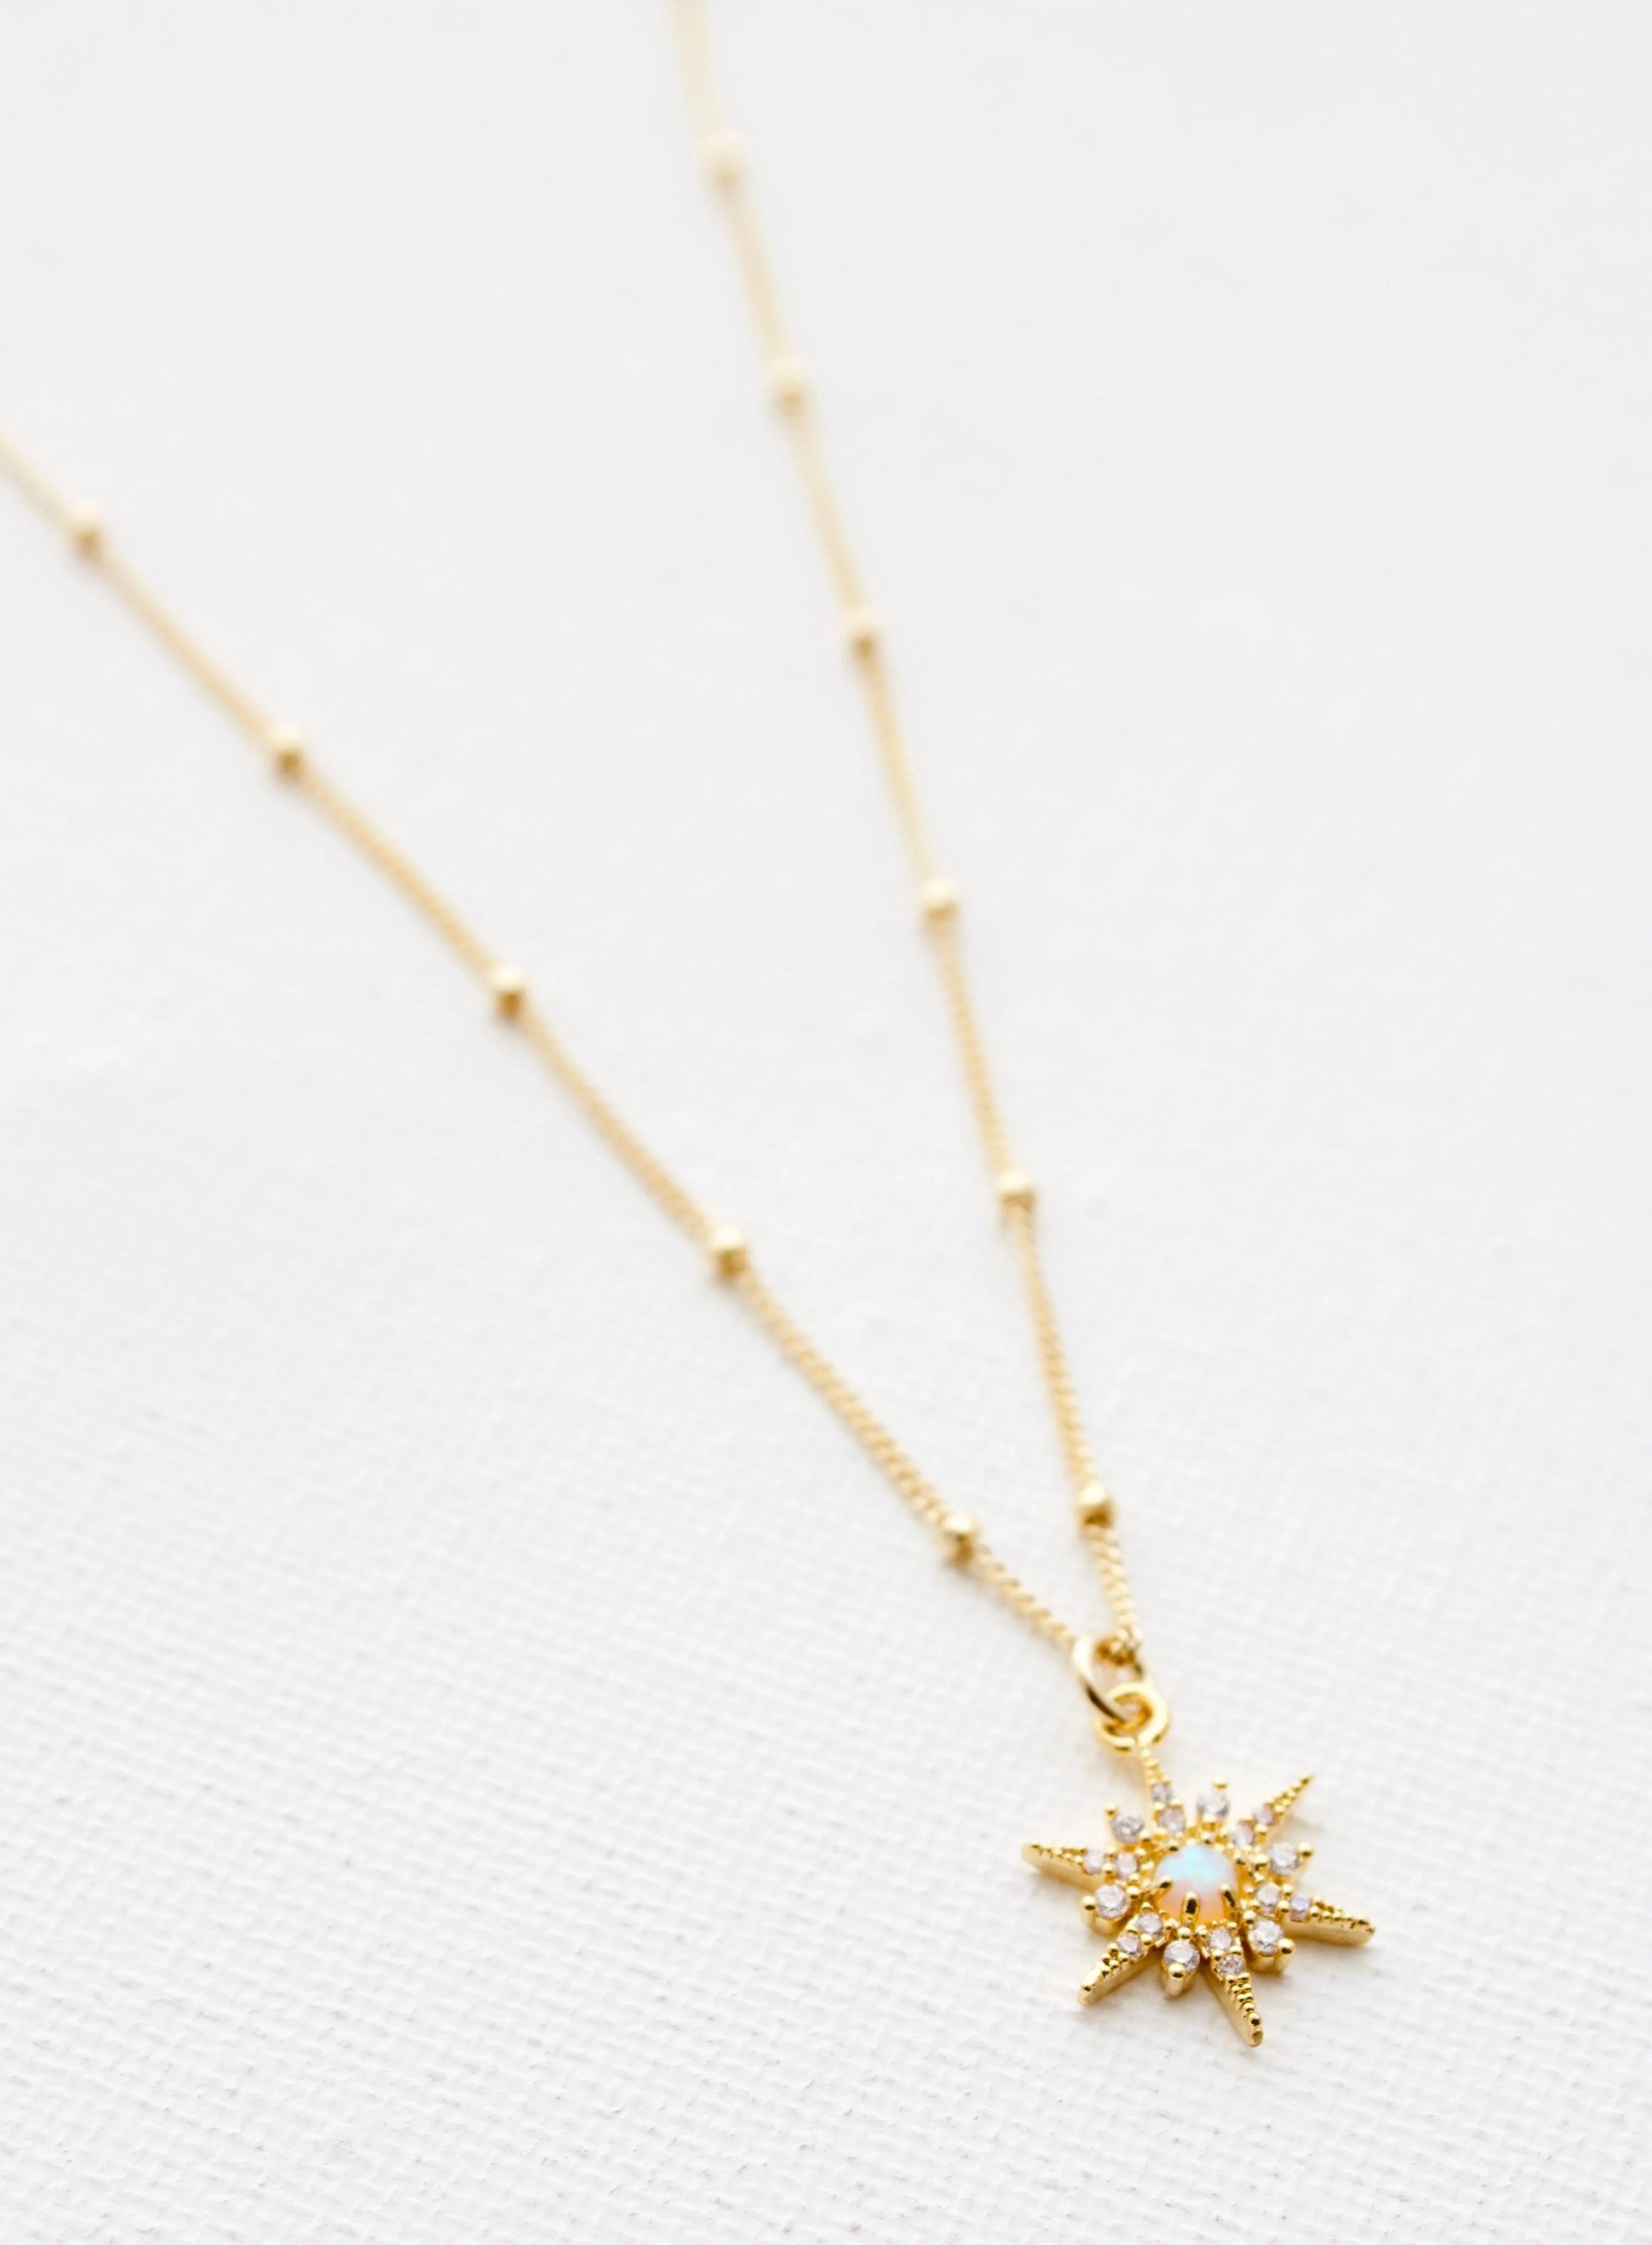 OPAL STARBURST NECKLACE | Katie Waltman Jewelry